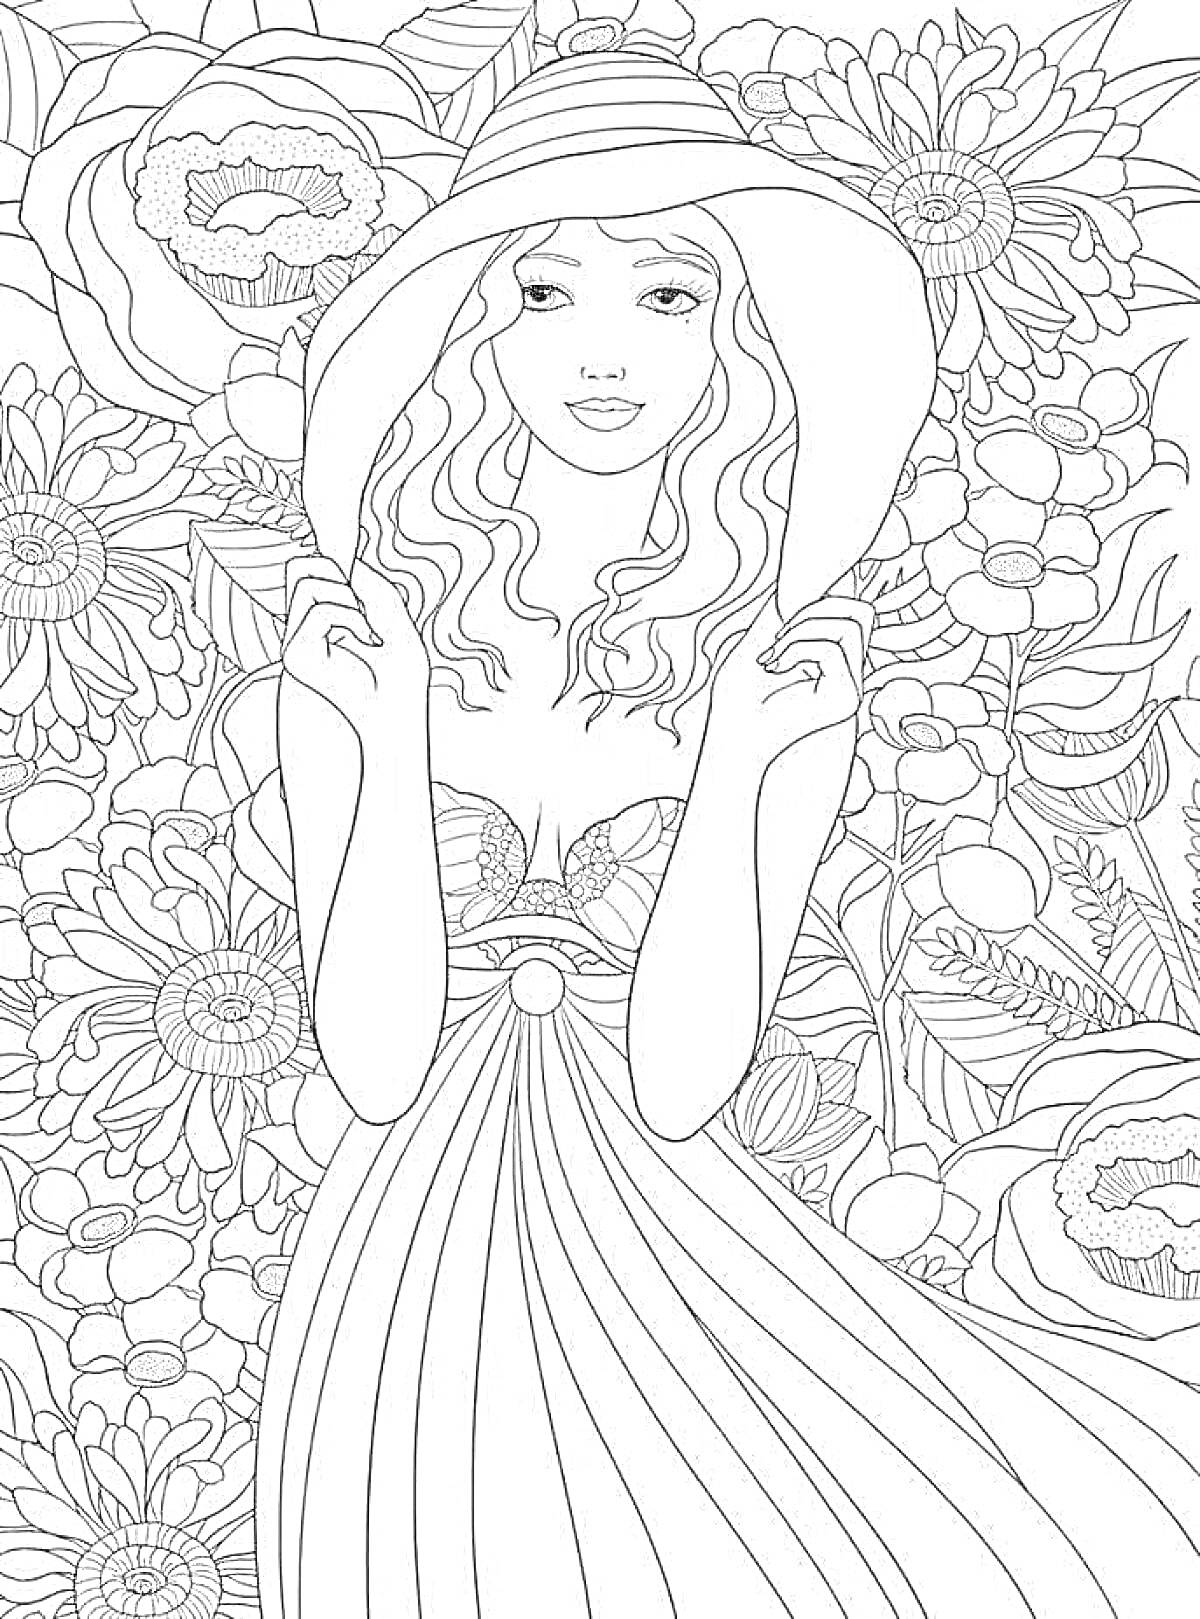 Раскраска Девушка в платье и шляпе на фоне цветочного узора